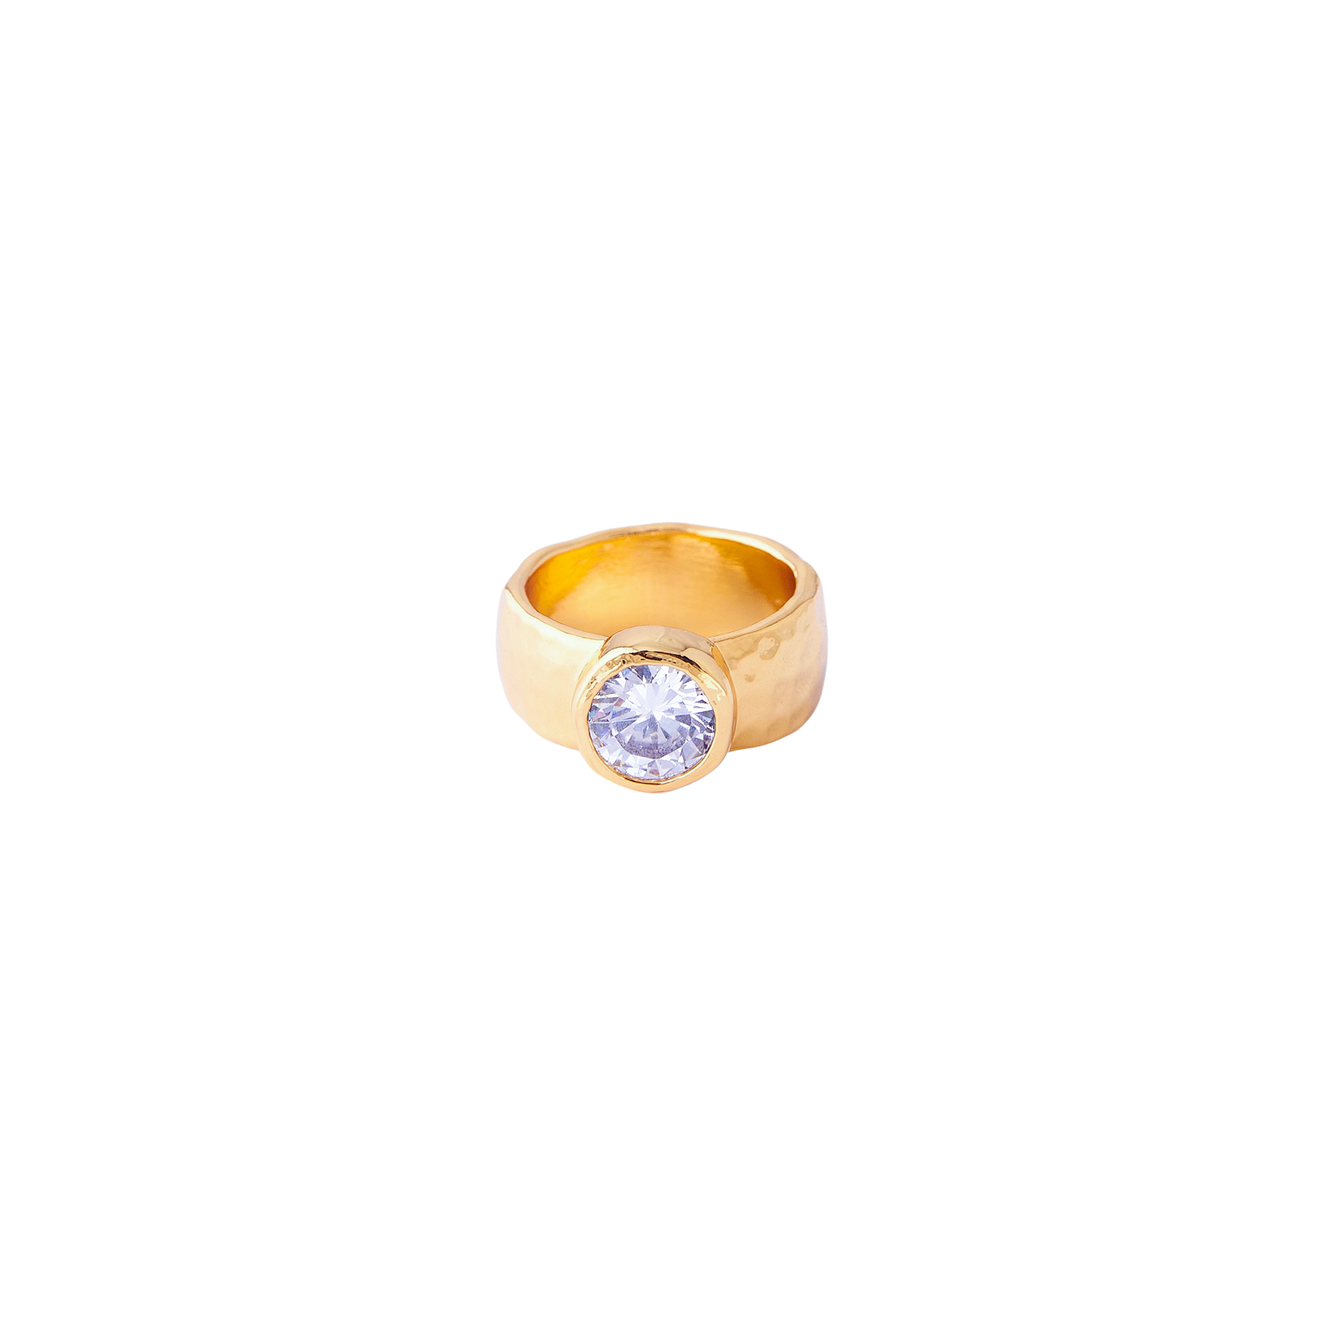 Herald Percy Золотистое кольцо с крупным кристаллом herald percy золотистая цепочка с подвеской прямоугольником с кристаллом